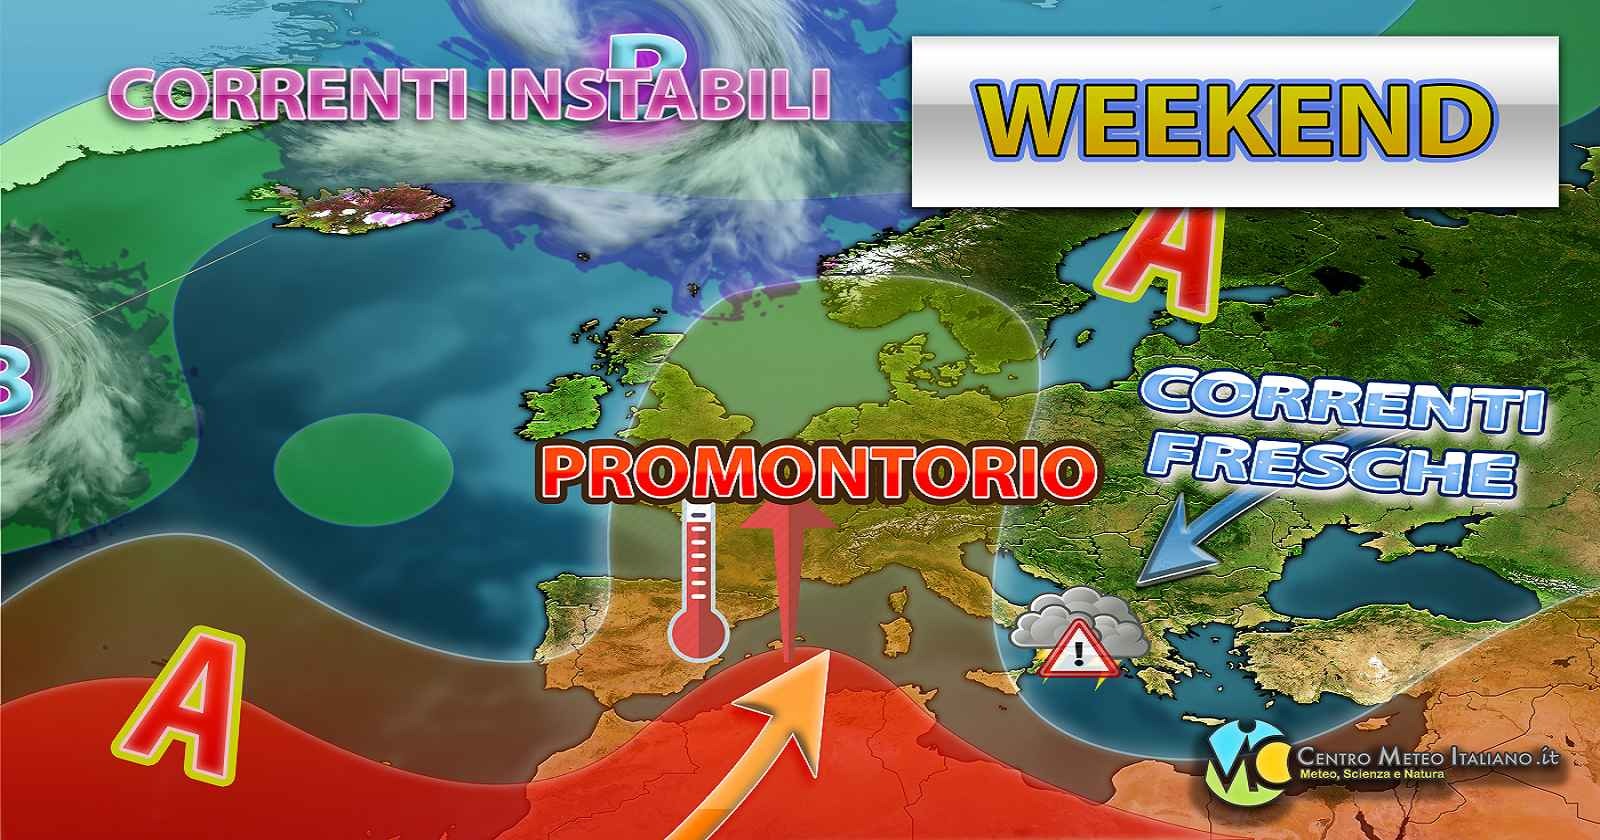 Meteo - Italia in balìa di un flusso perturbato, con piogge e temporali in arrivo anche nel Weekend: i dettagli